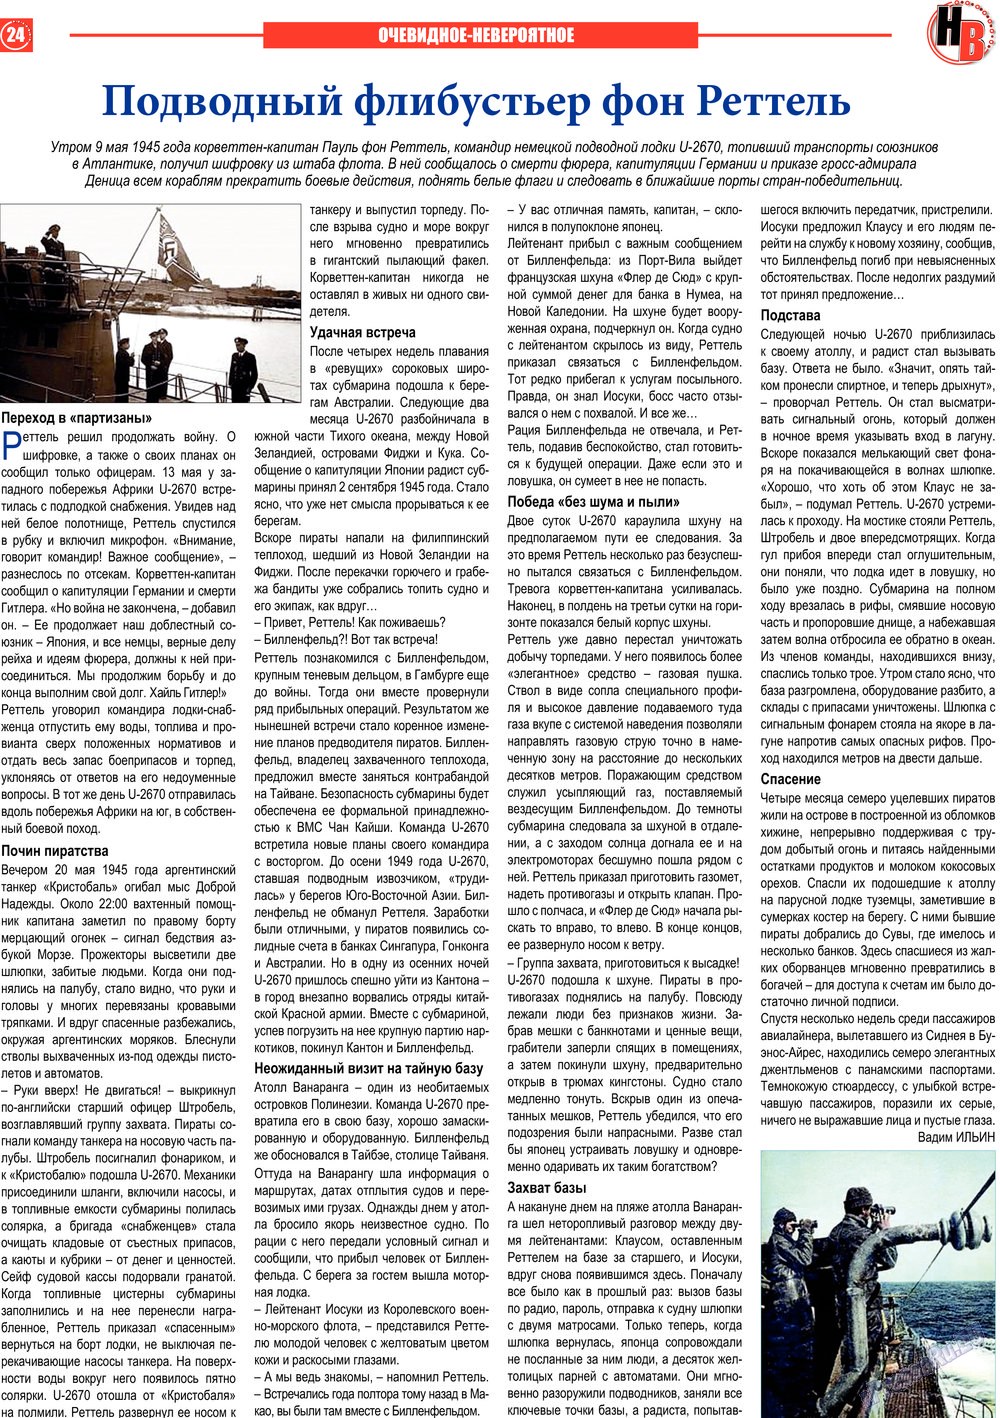 Наше время, газета. 2013 №6 стр.24